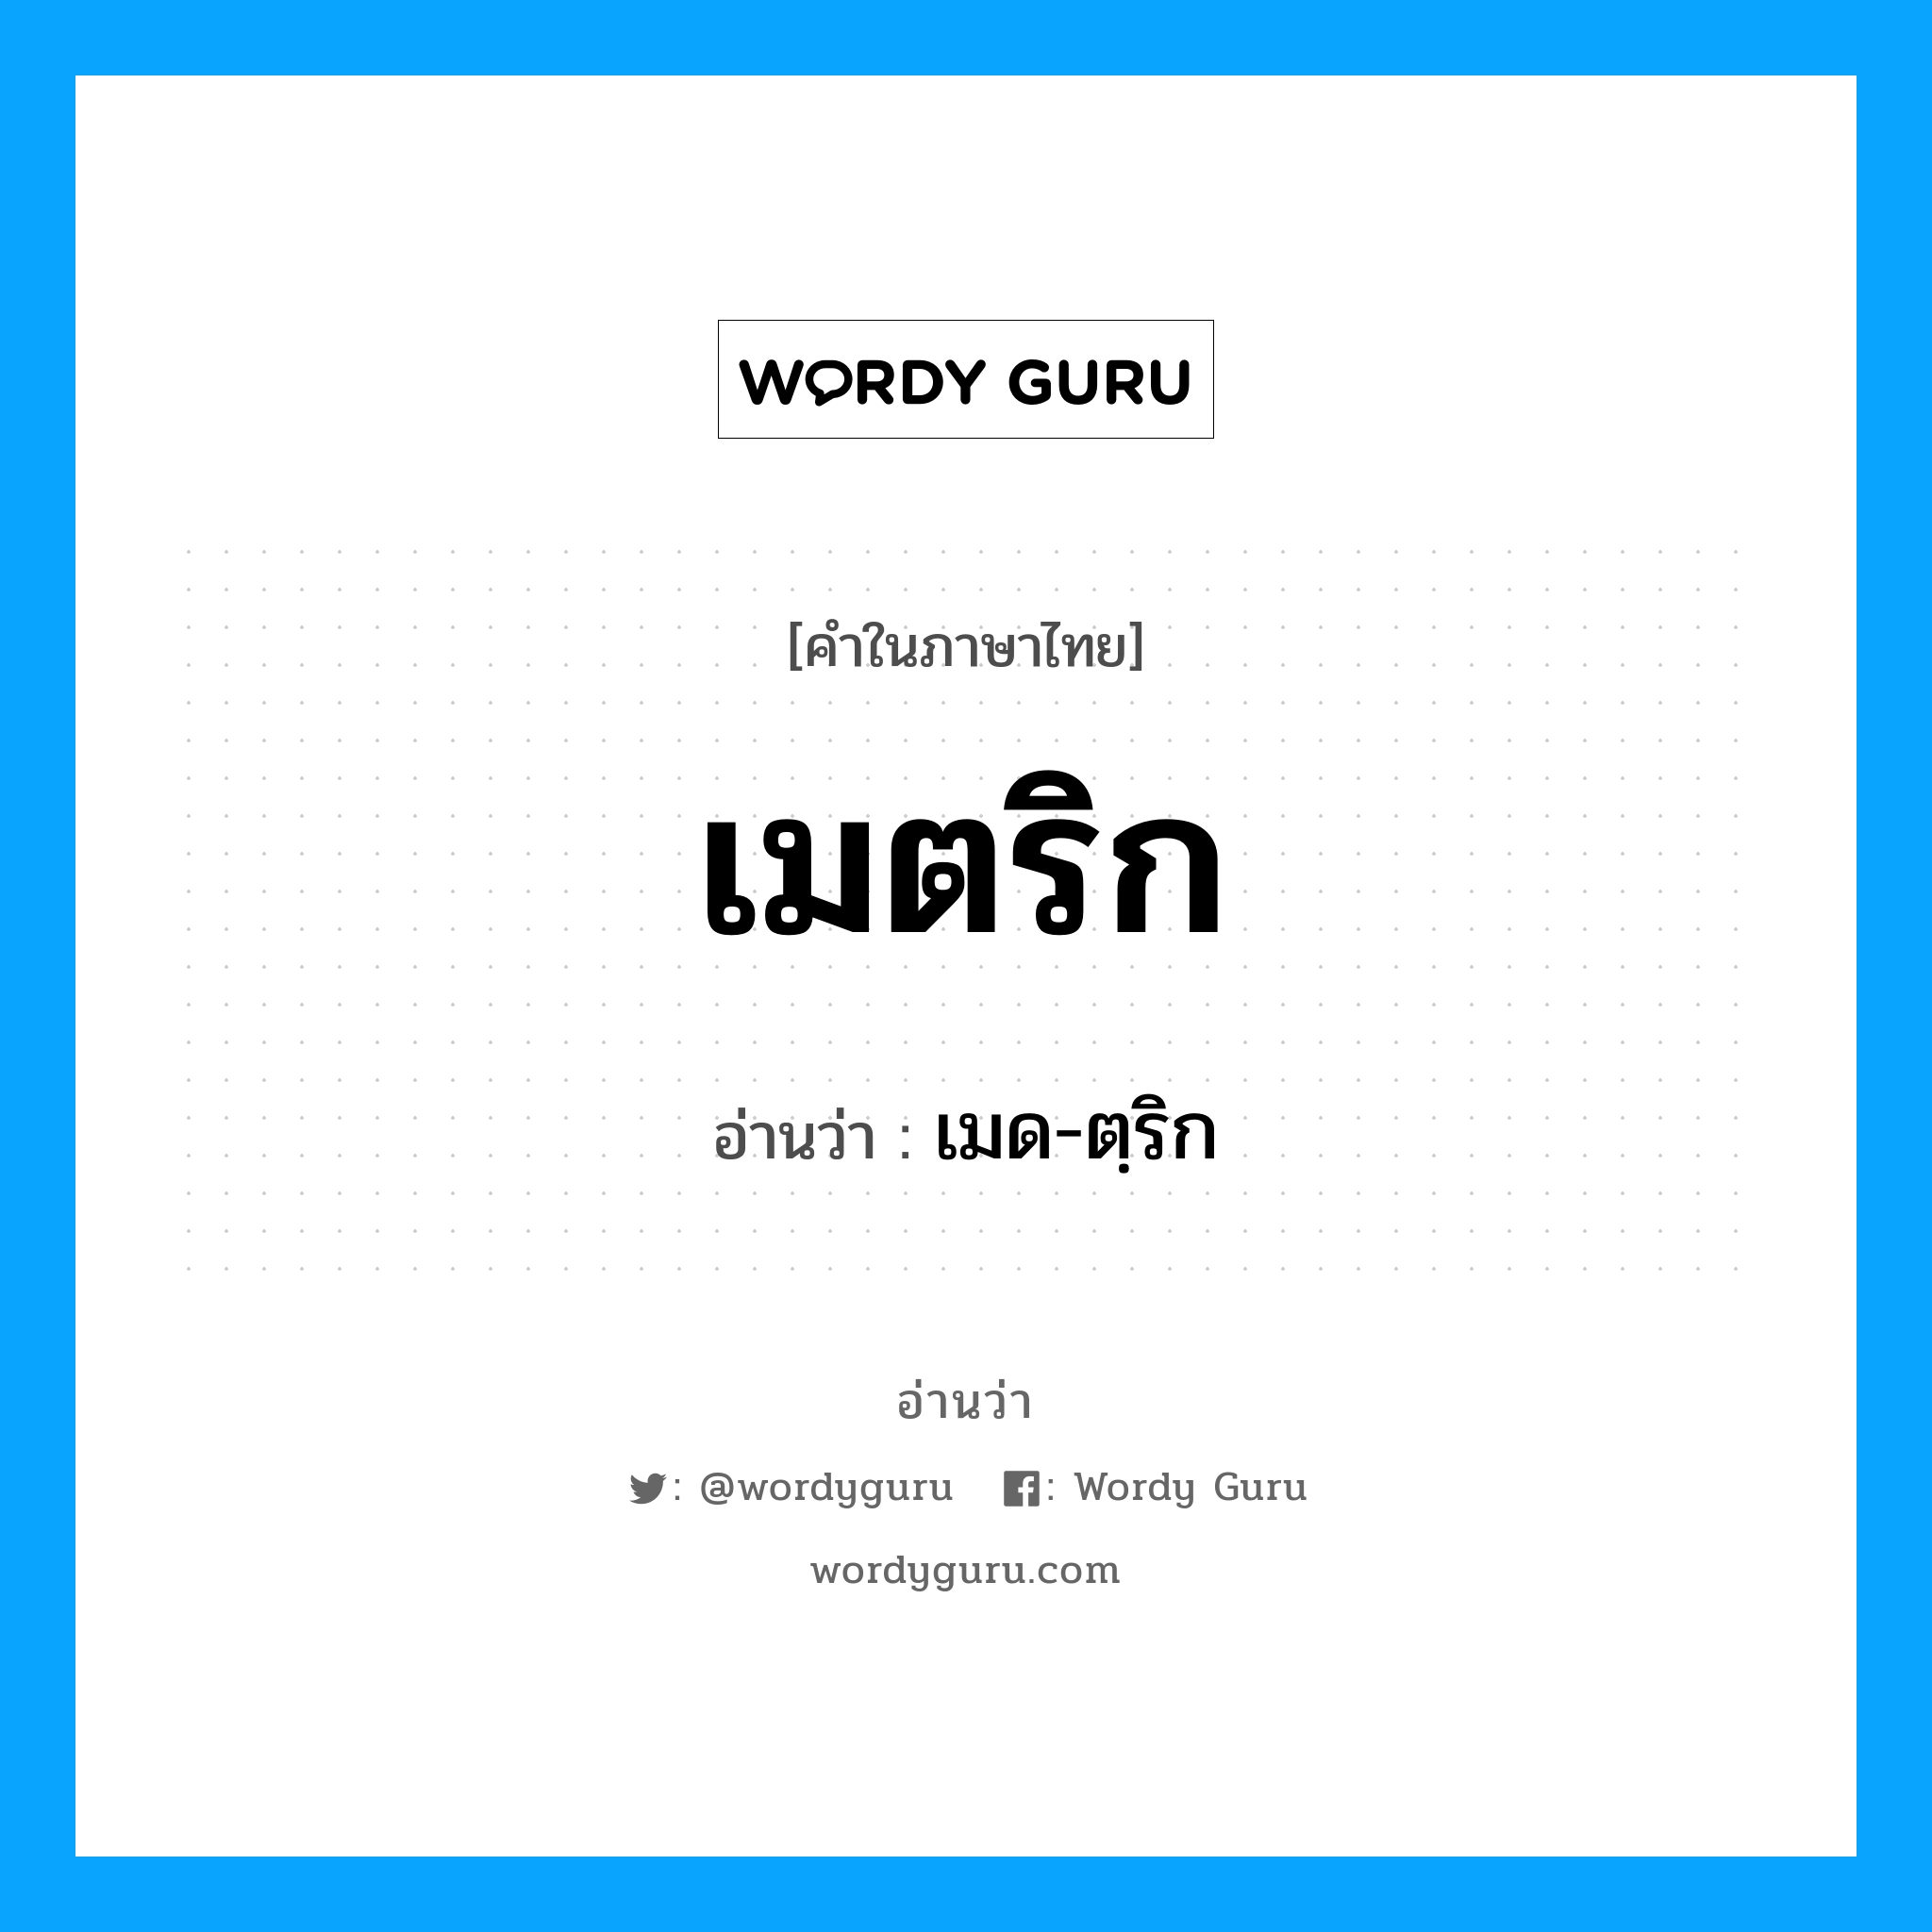 เมด-ตฺริก เป็นคำอ่านของคำไหน?, คำในภาษาไทย เมด-ตฺริก อ่านว่า เมตริก